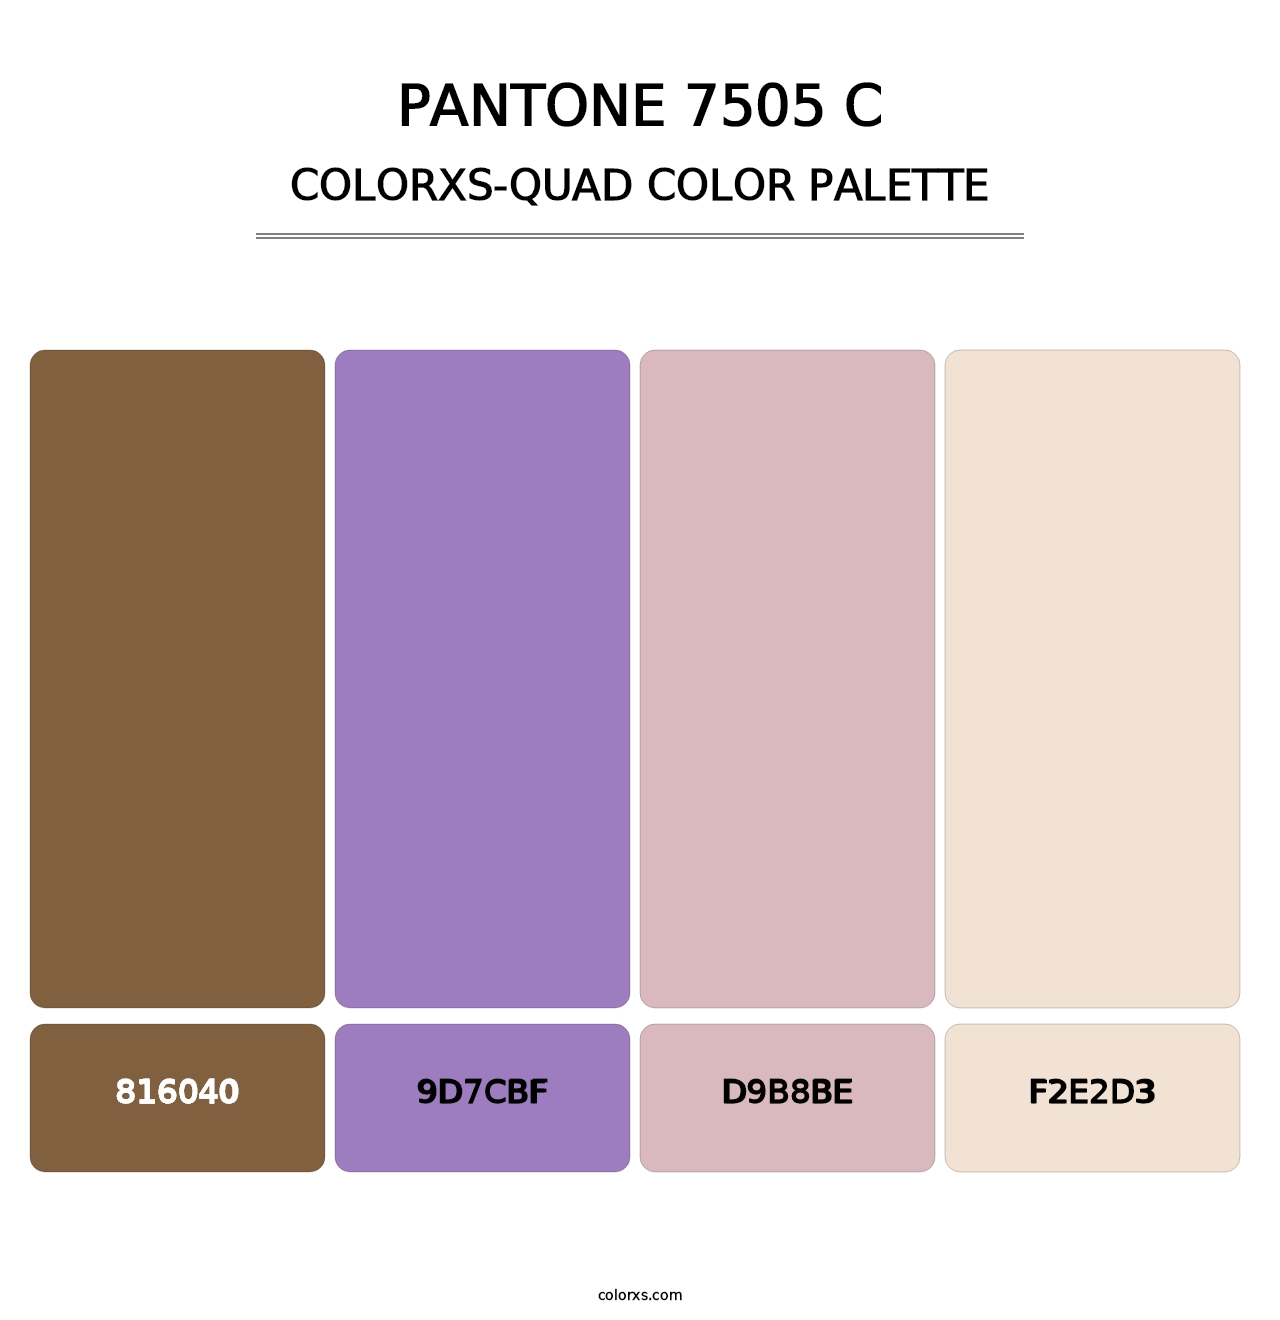 PANTONE 7505 C - Colorxs Quad Palette